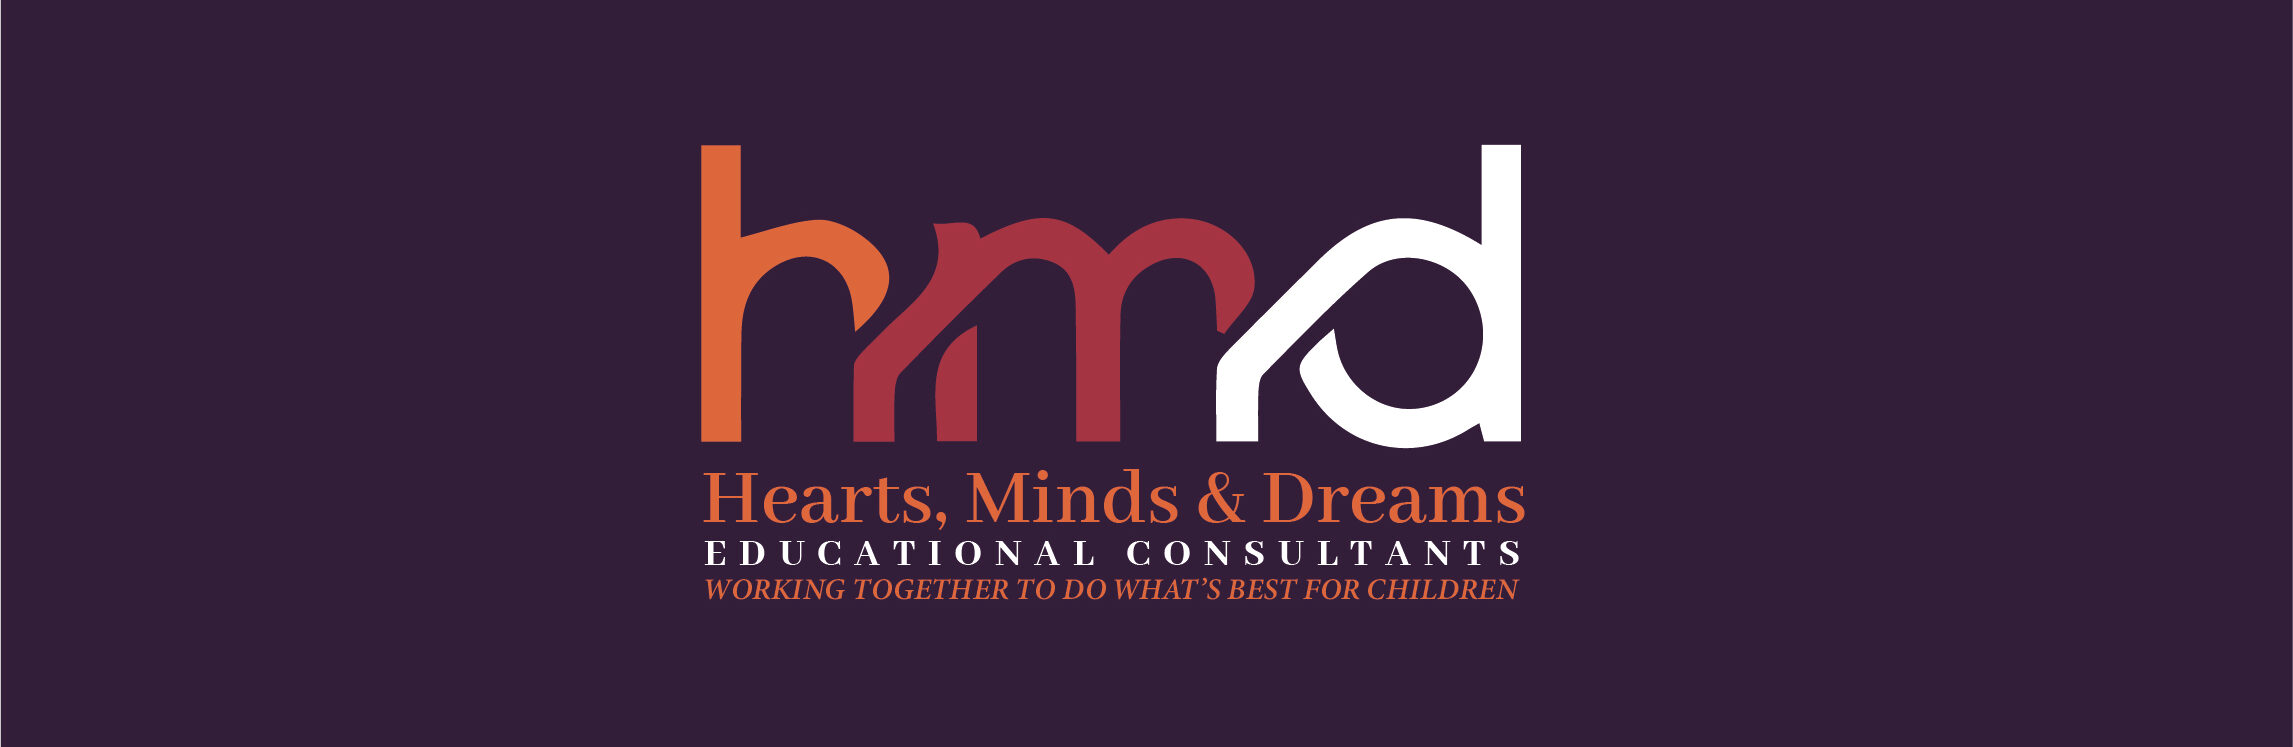 Hearts, Minds & Dreams TM